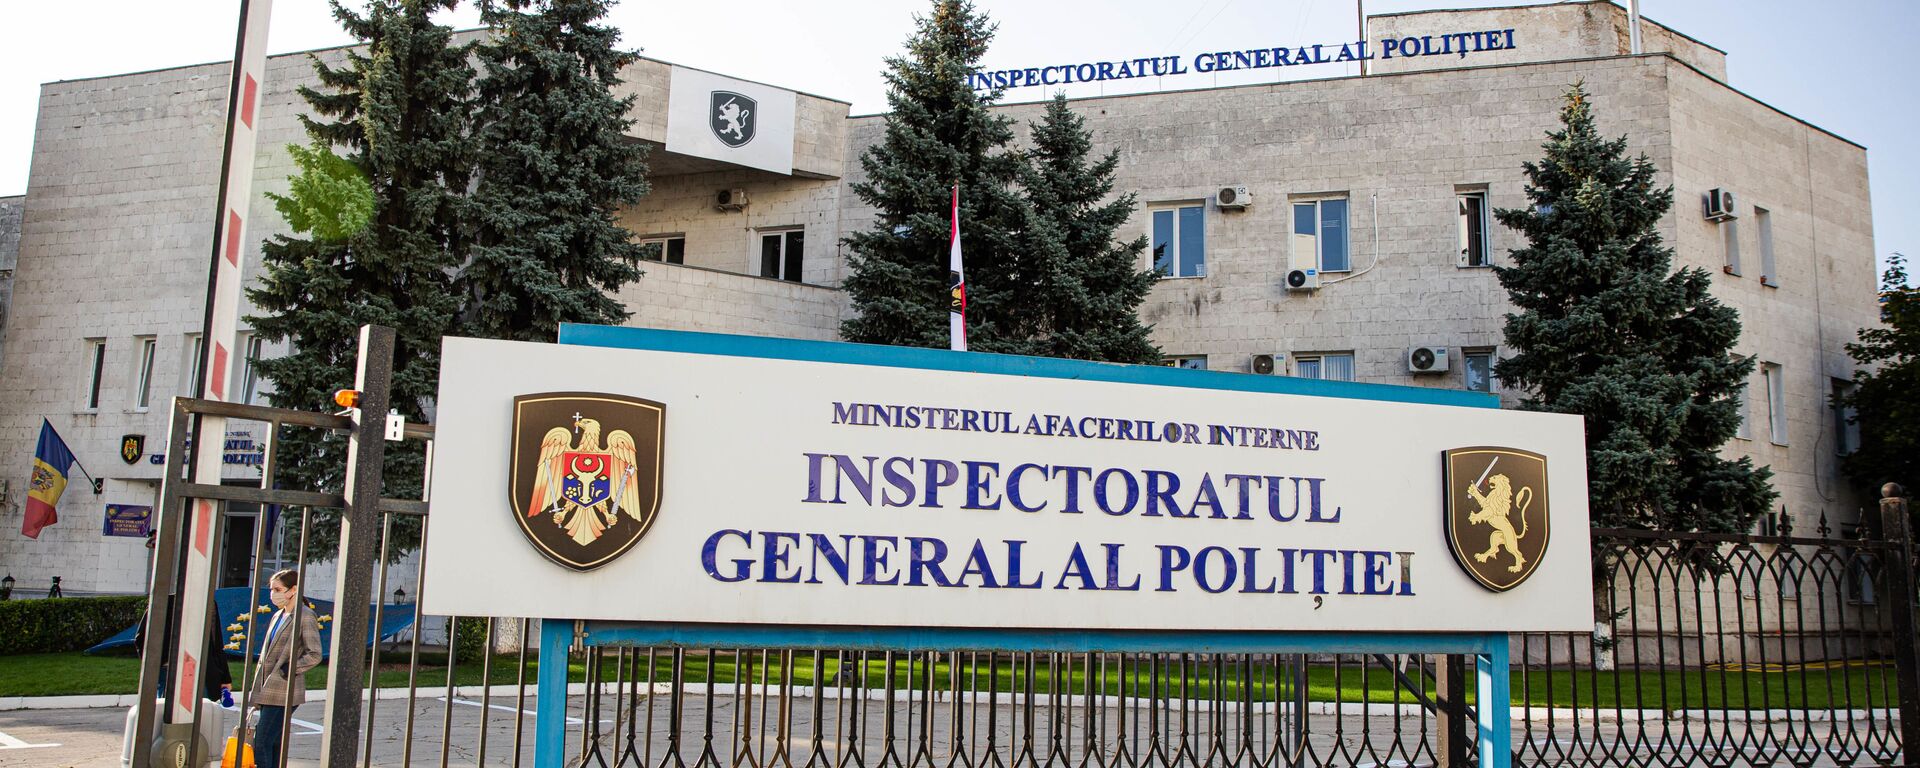 Inspectoratul General al Politiei poliției IGP - Sputnik Moldova, 1920, 08.09.2021